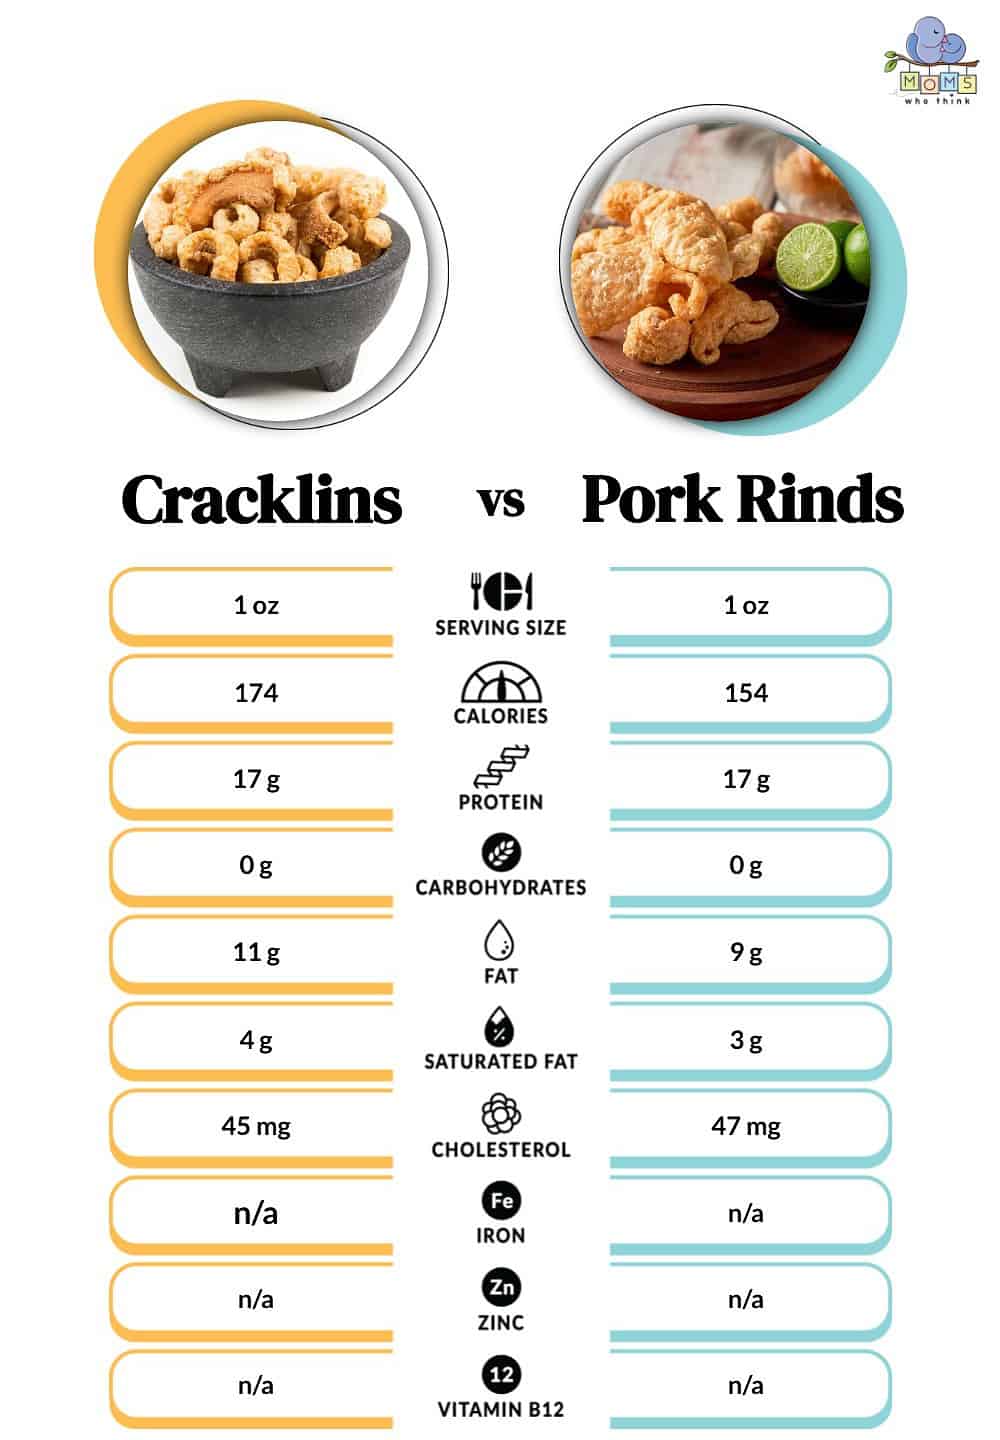 Cracklins vs Pork Rinds Nutritional Facts